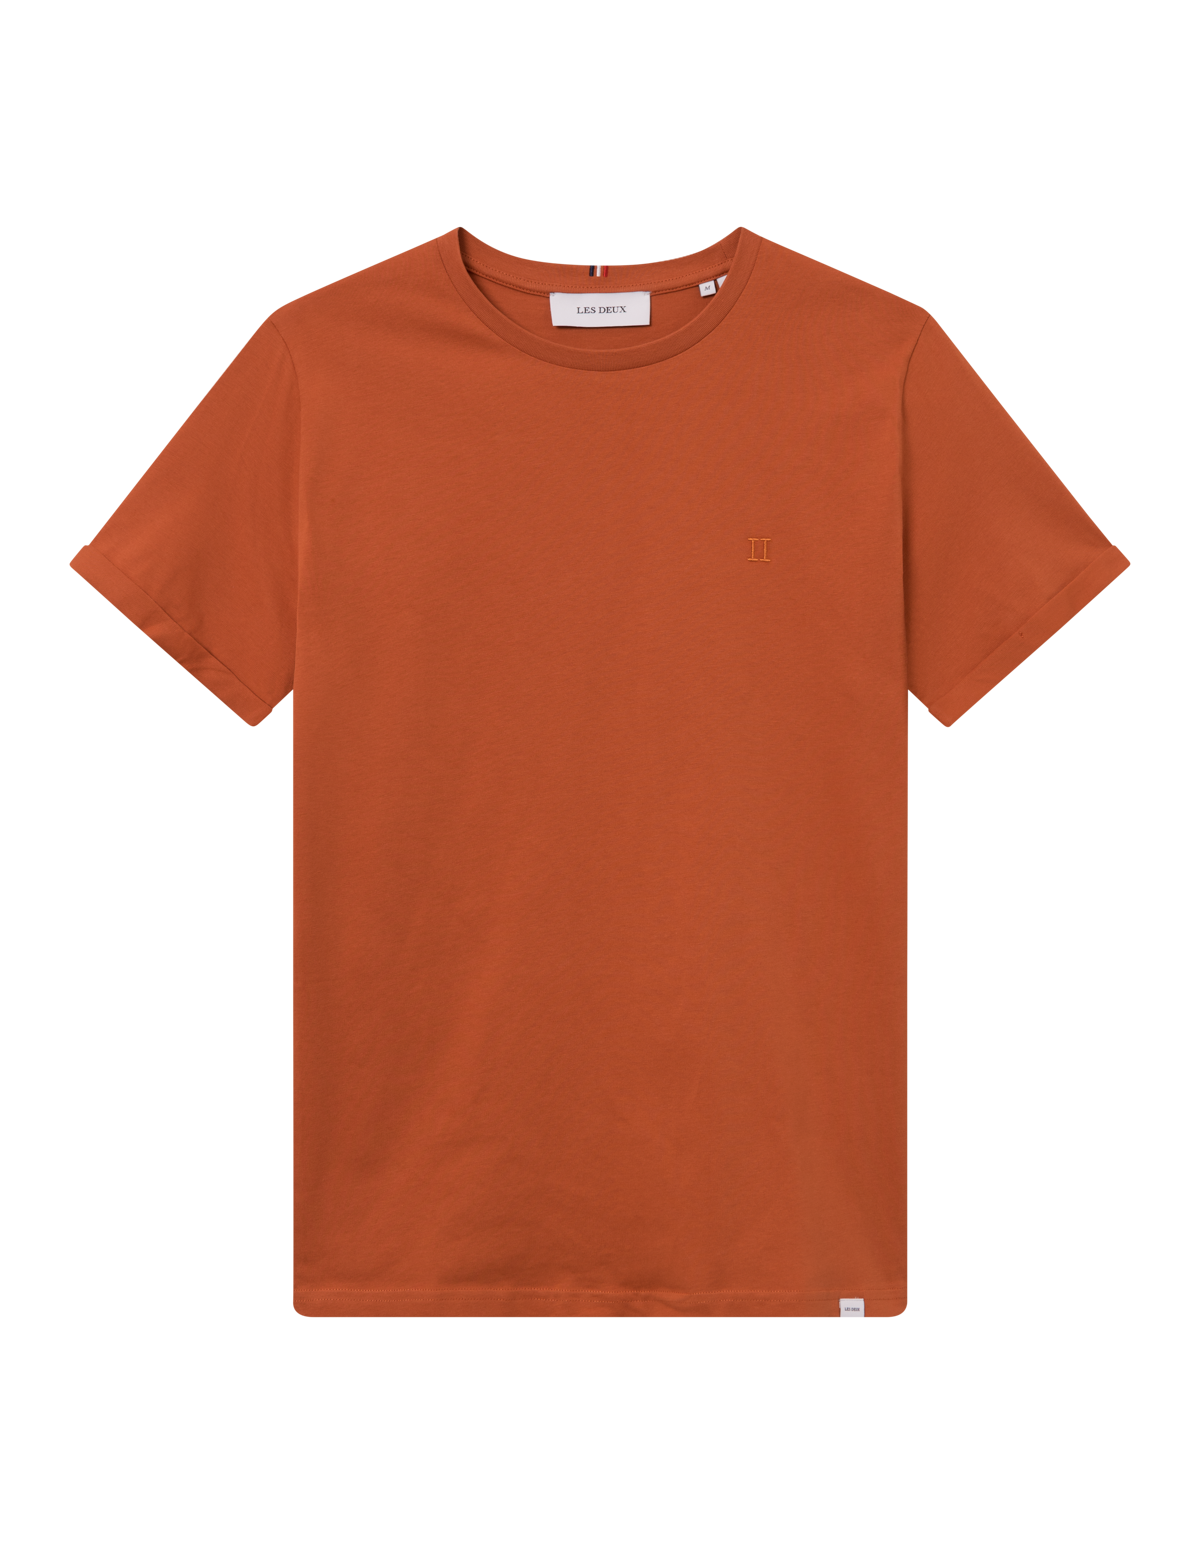 Nørregaard T-Shirt -  Court Orange/Orange